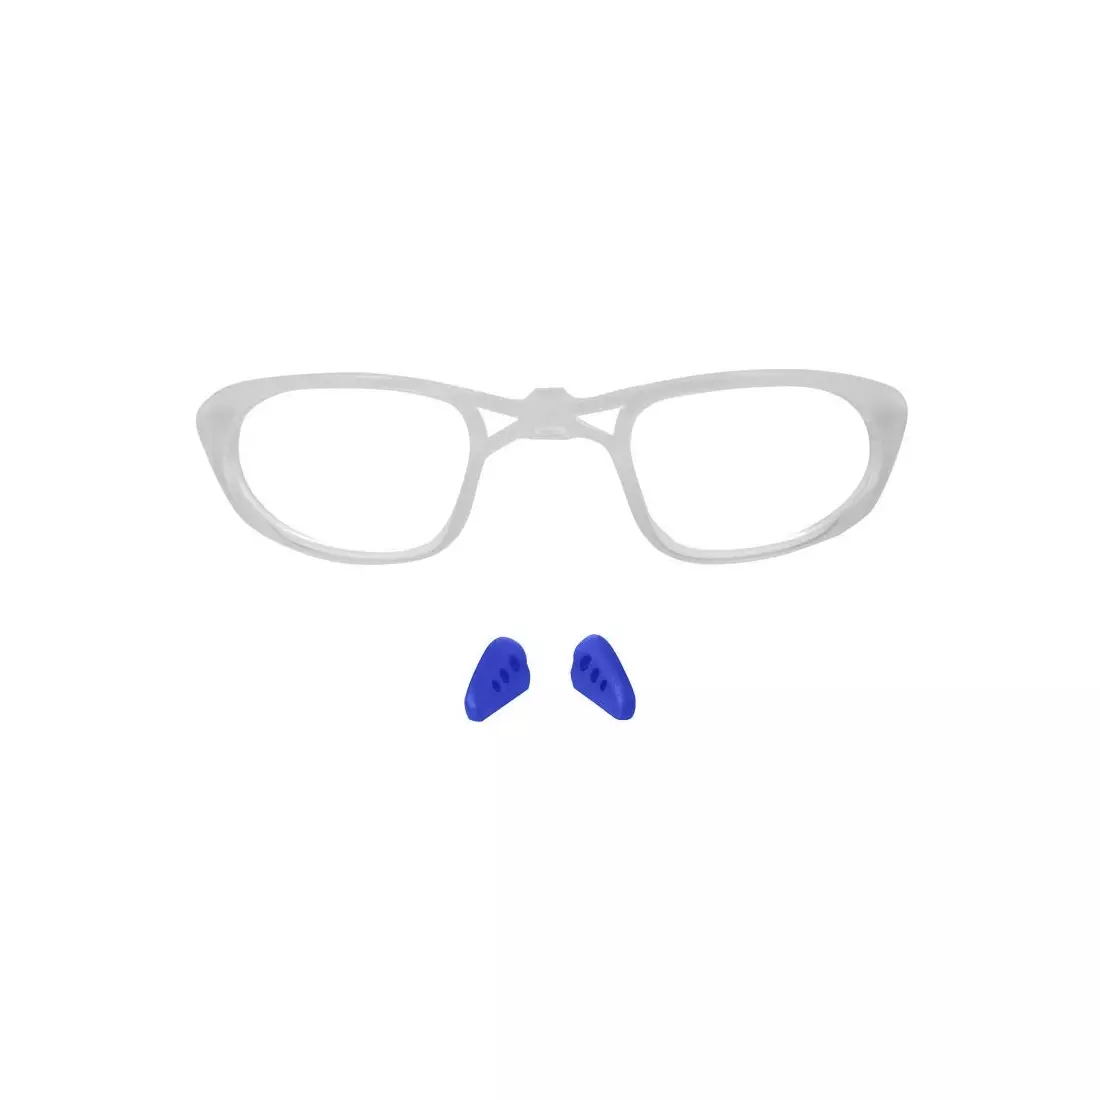 FORCE RIDE PRO kék és fehér szemüveg 909220